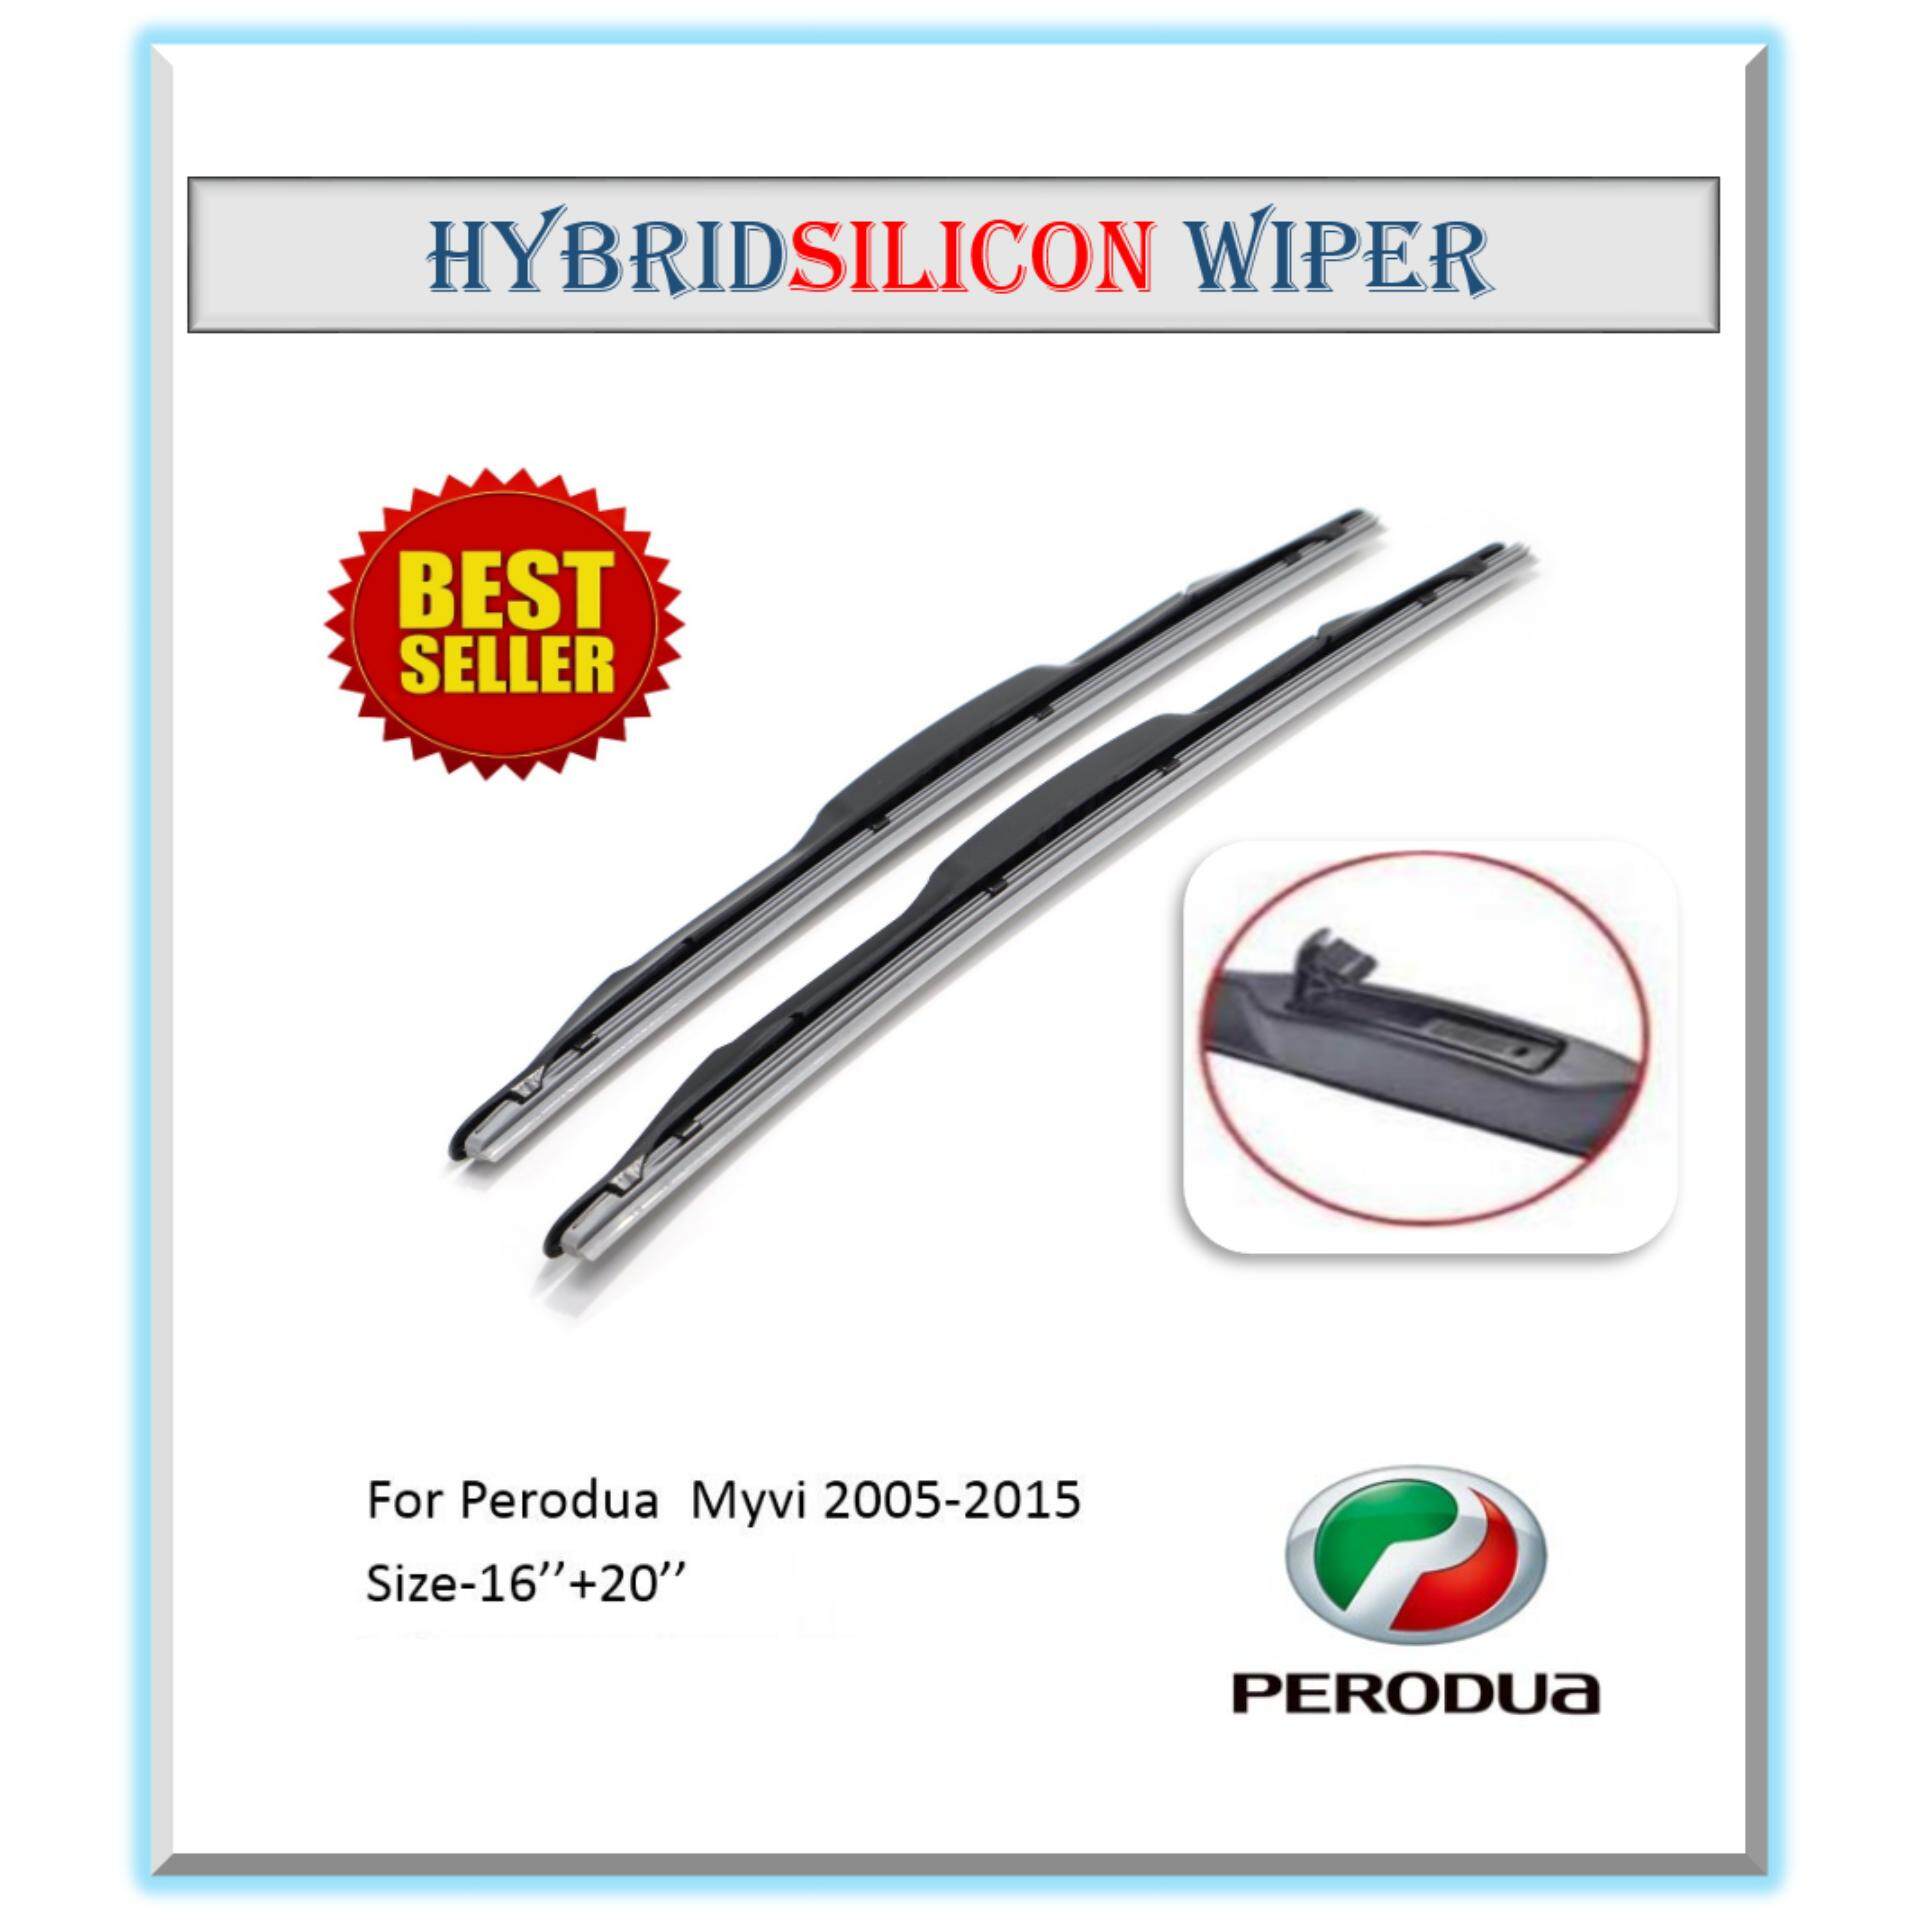 Review Hybrid Silicon Wiper Nissan Almera Size 14 21 Dan 